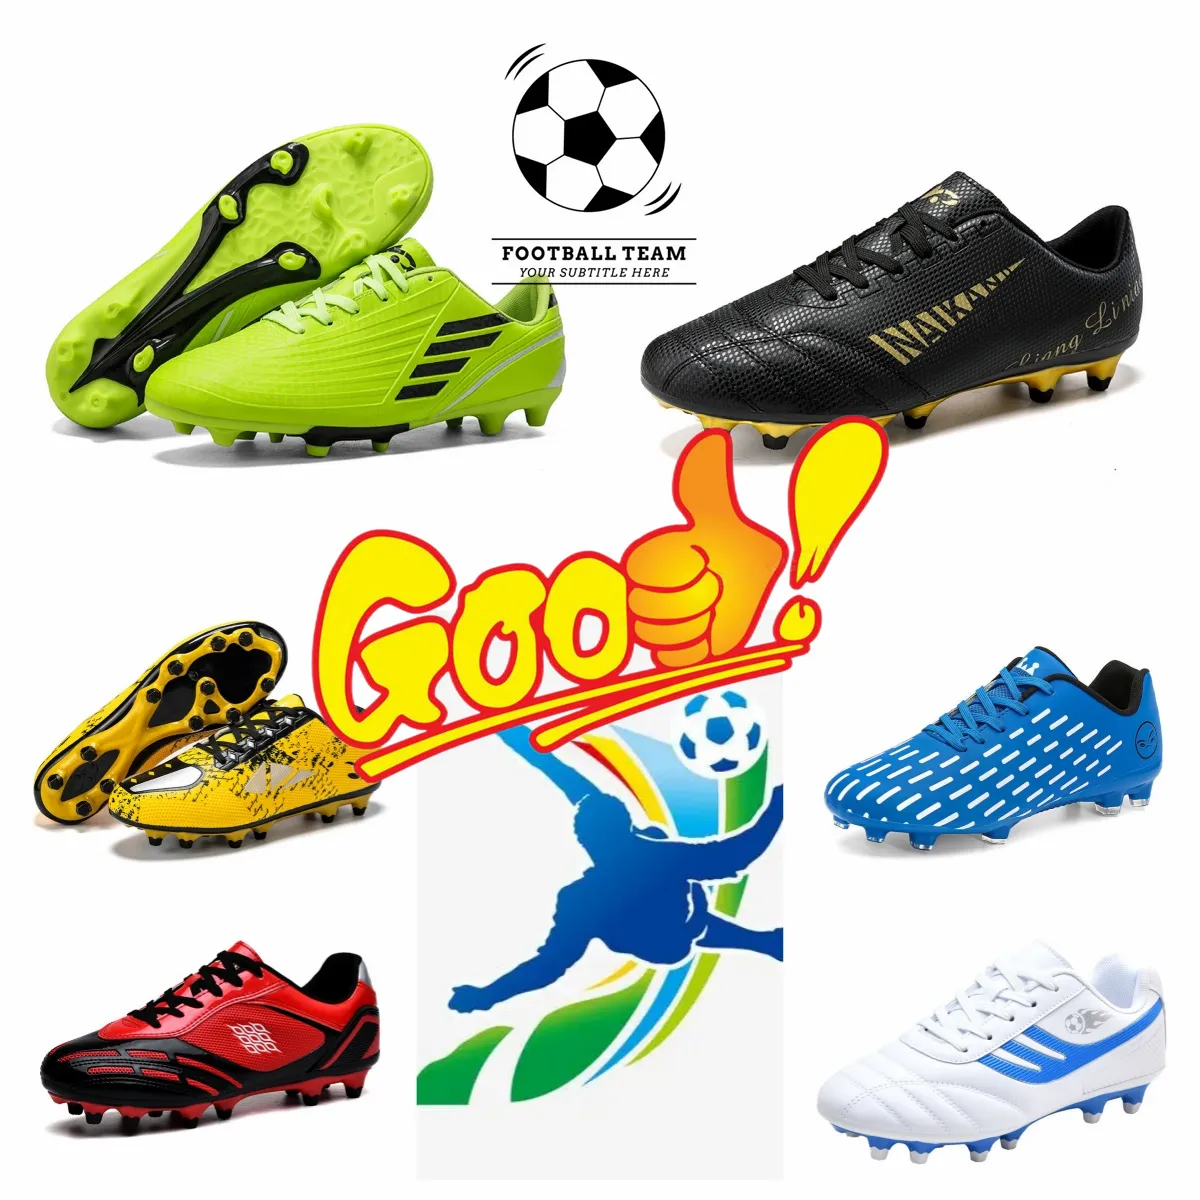 بيع أحذية ذات جودة عالية للرجال في الهواء الطلق ، أحذية كرة القدم ، وامتصاص صدمة الهواء الملف ، وامتصاص الصدمات ، والأحذية المضادة للانزلاق 35-45 96833